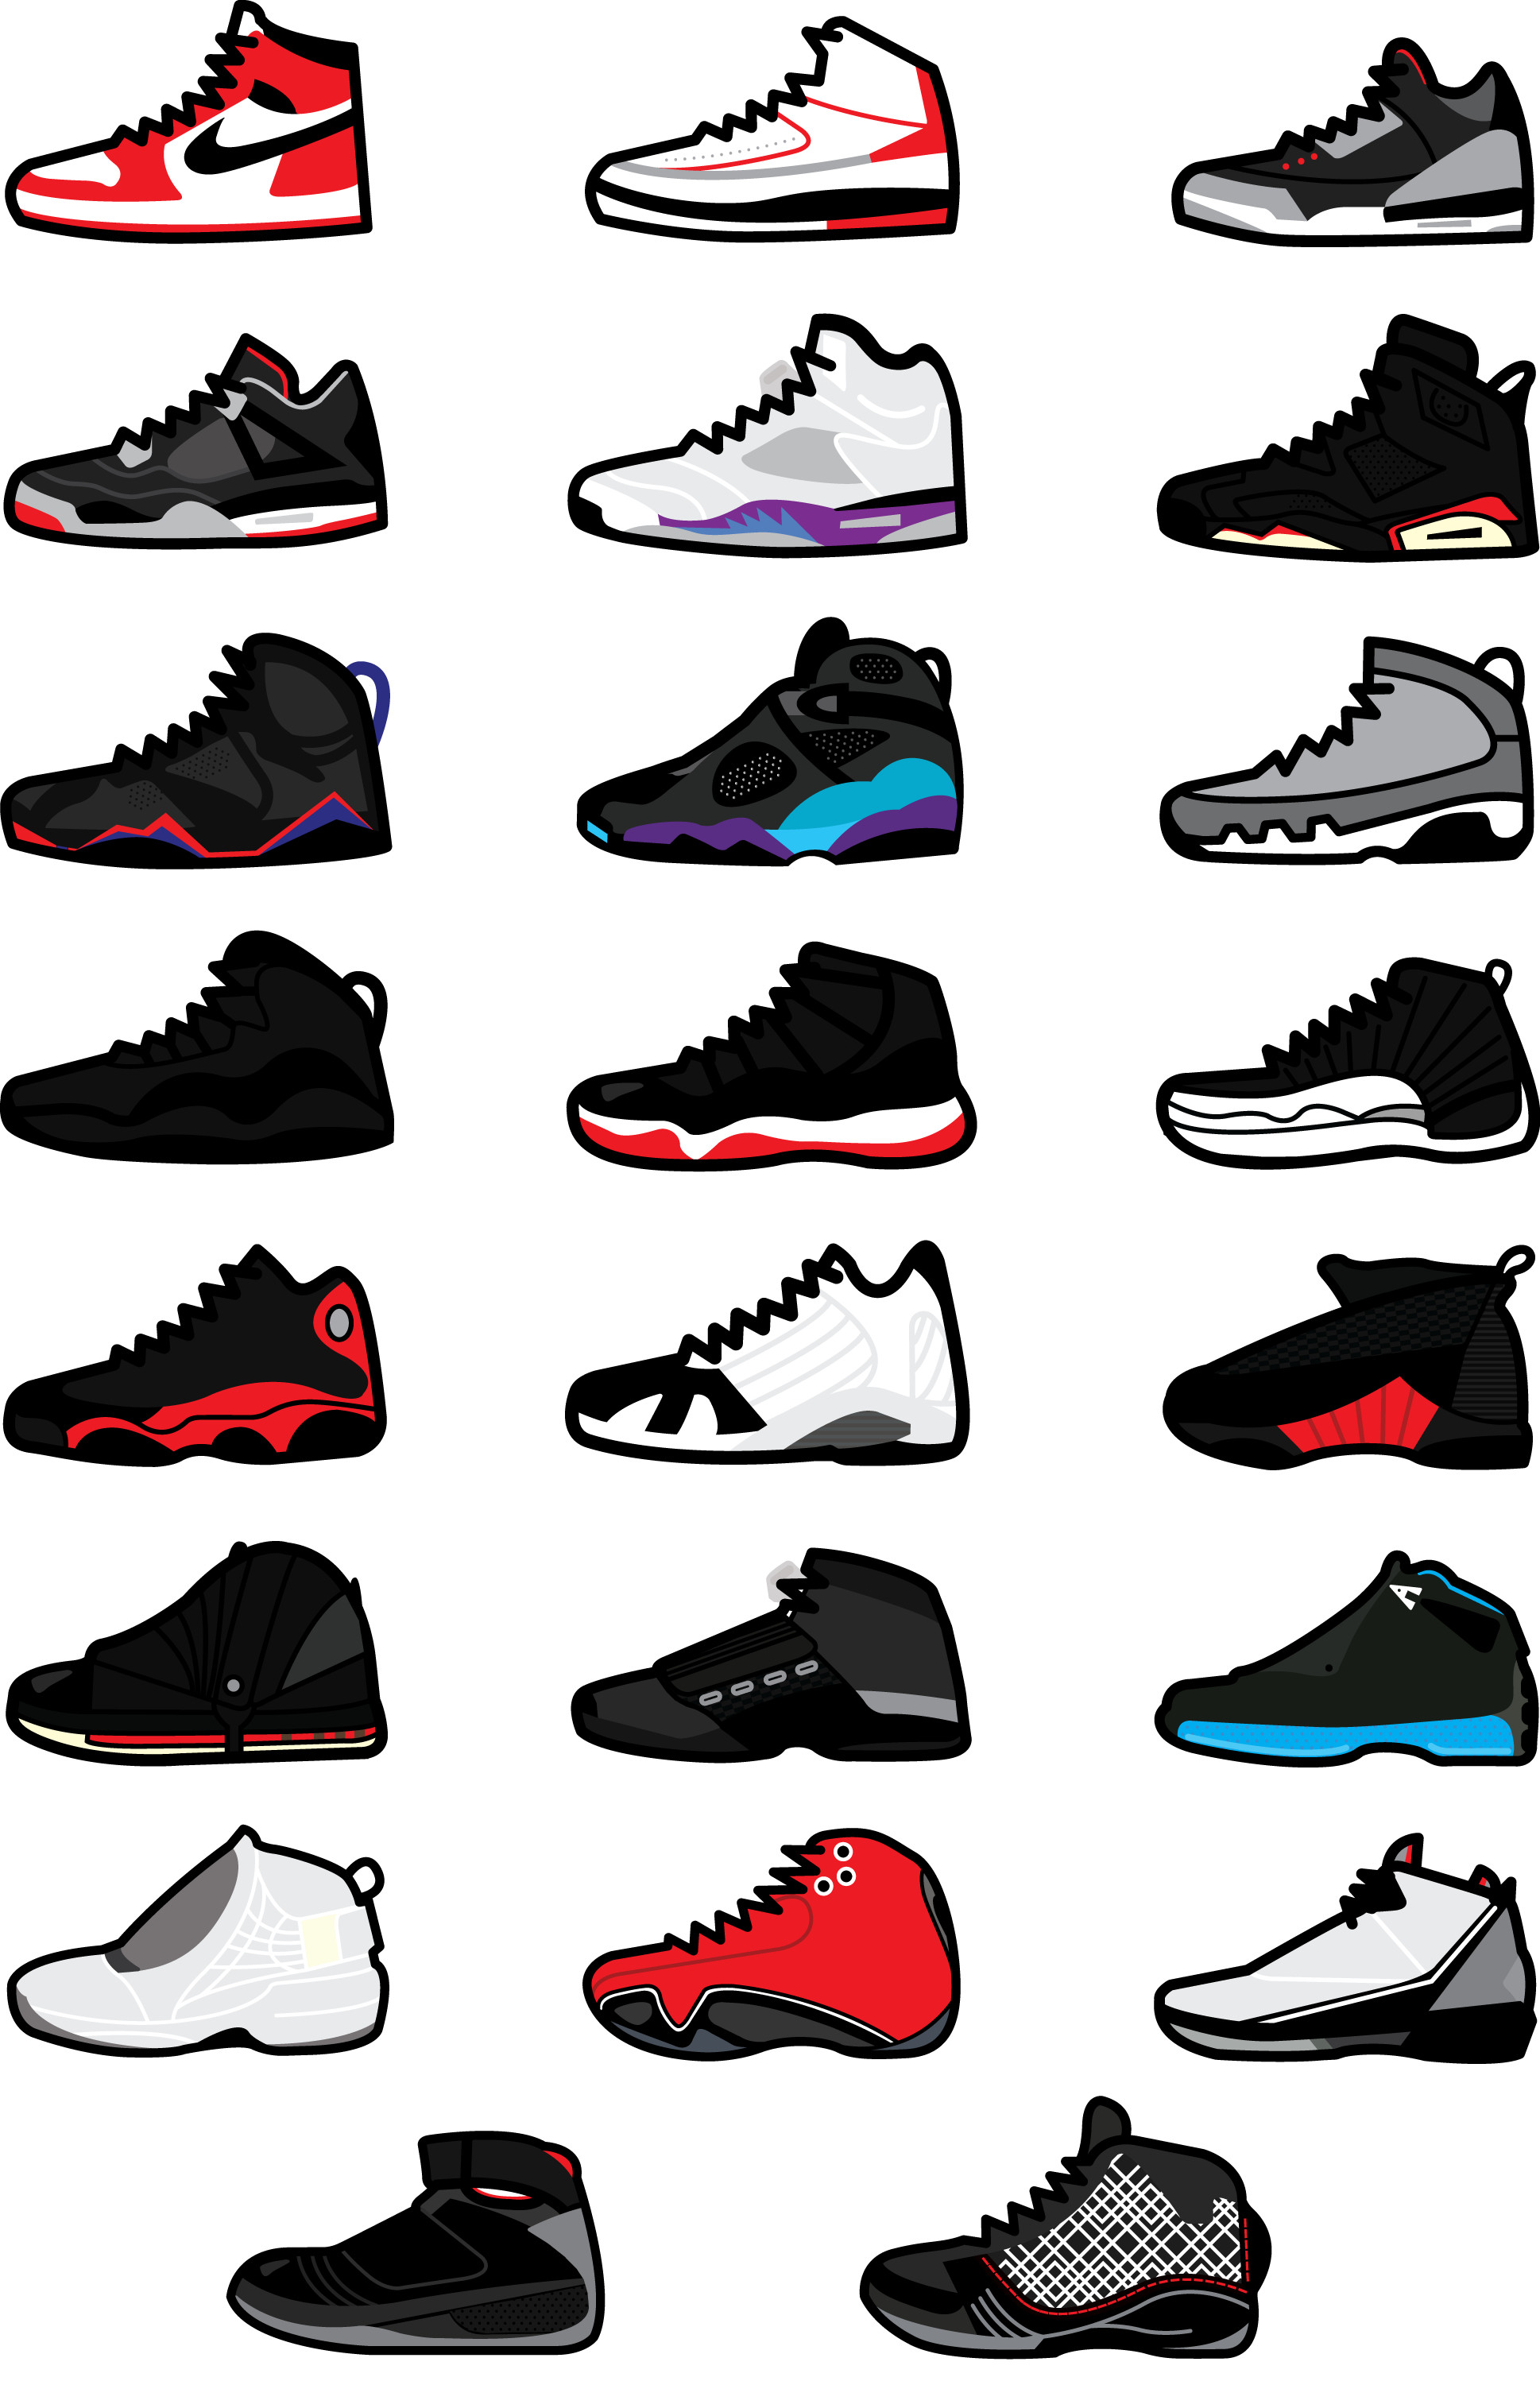 Jordan Sneaker Wallpapers  Top Free Jordan Sneaker Backgrounds   WallpaperAccess